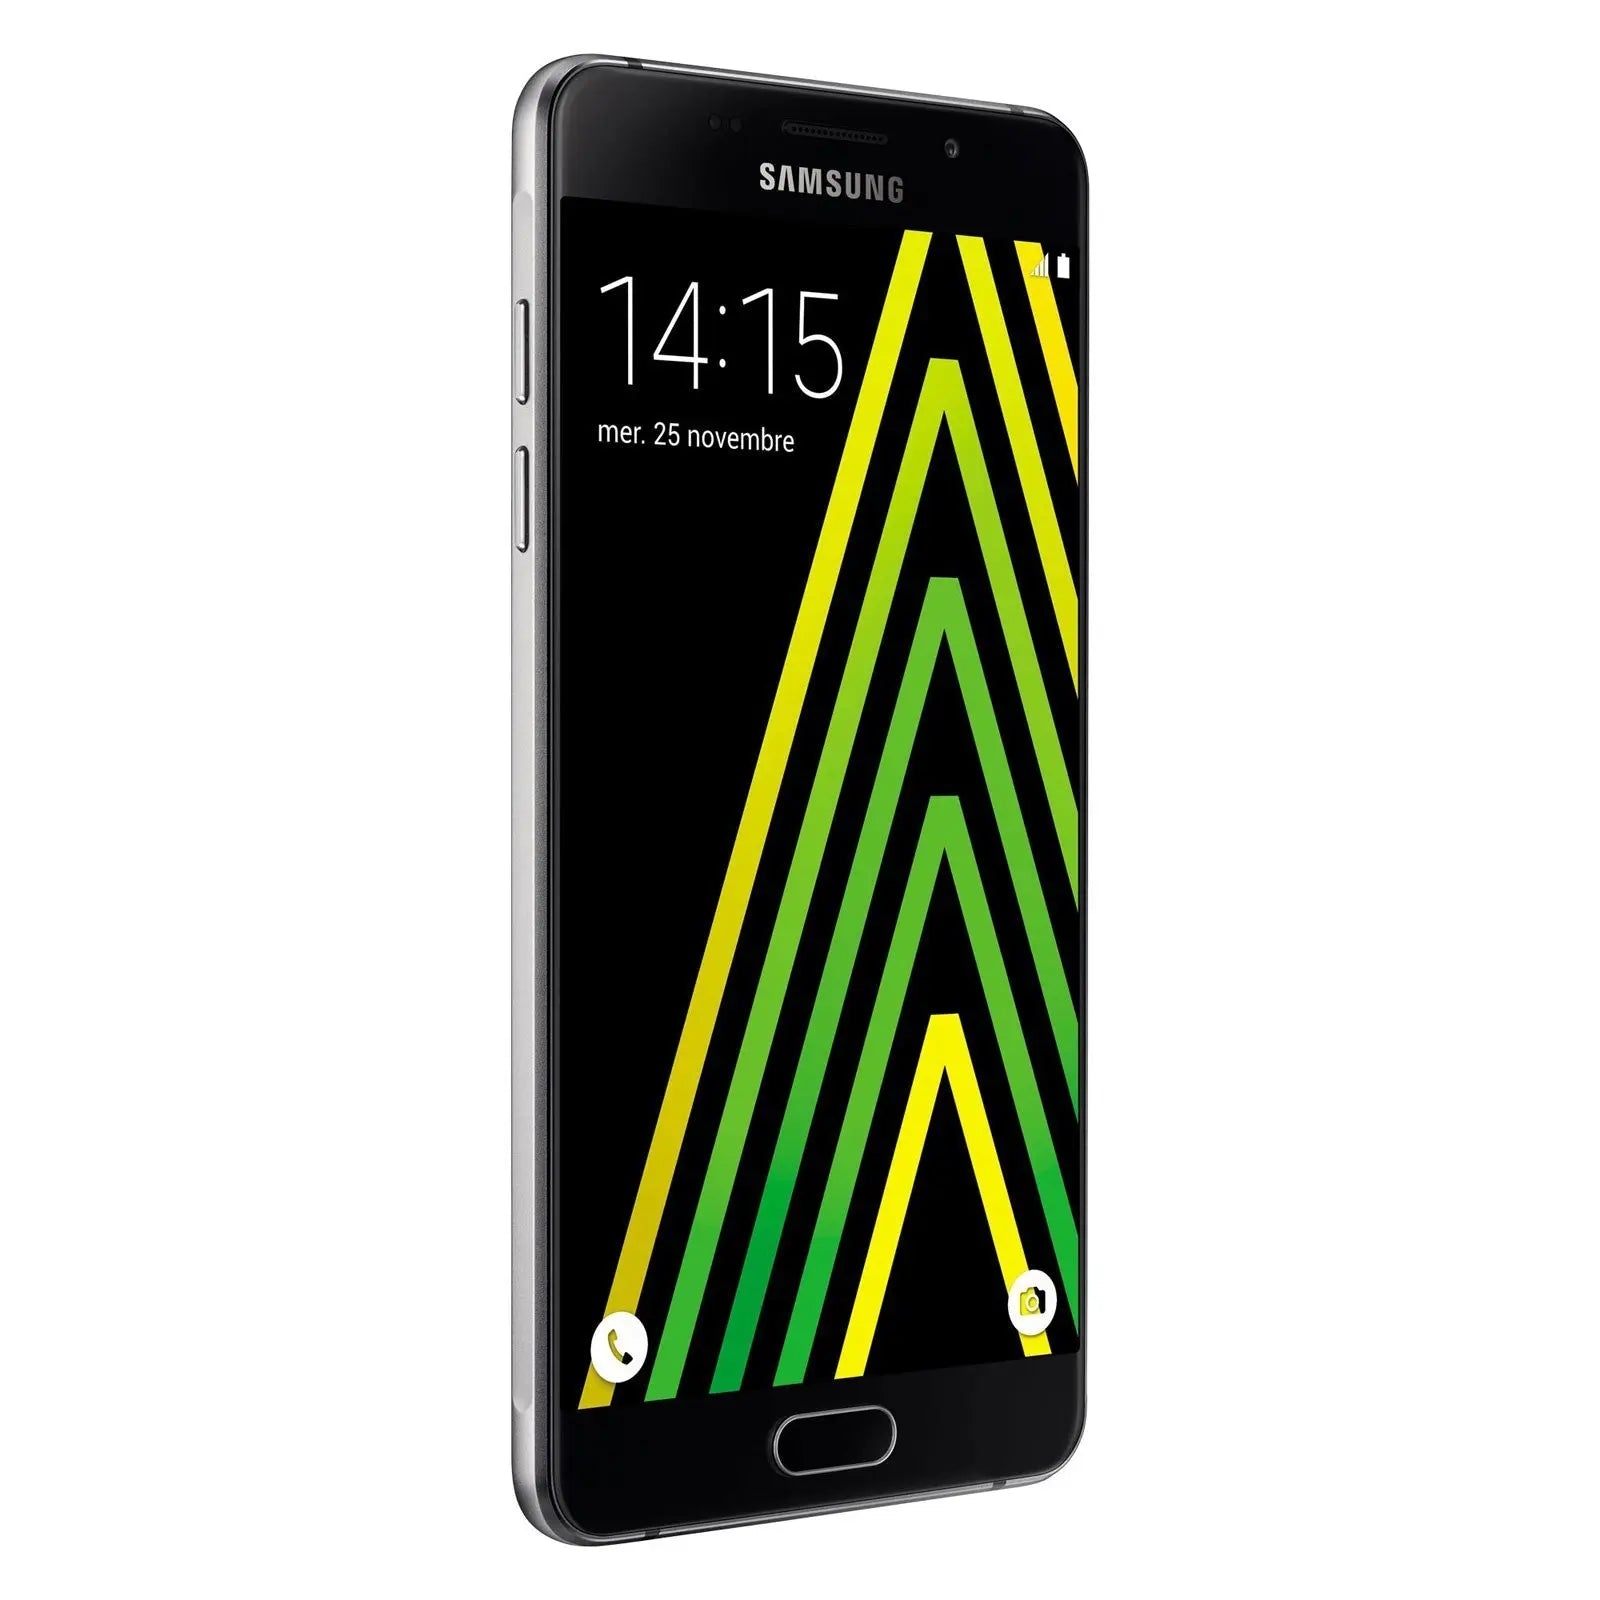 Samsung Galaxy A5 2016 Duos SM-A5100 Noir Samsung